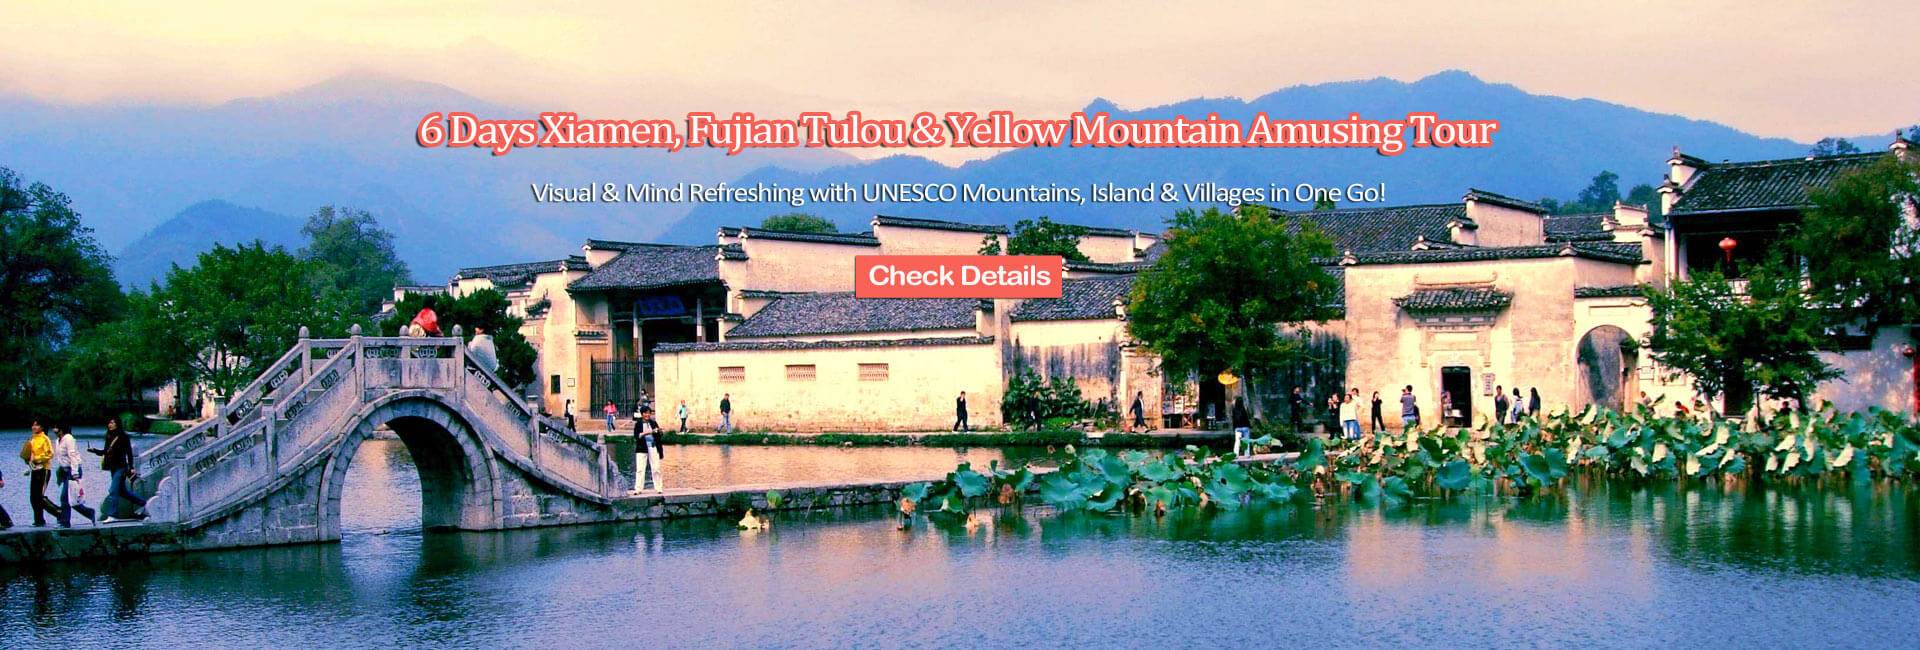 Fujian Tours 